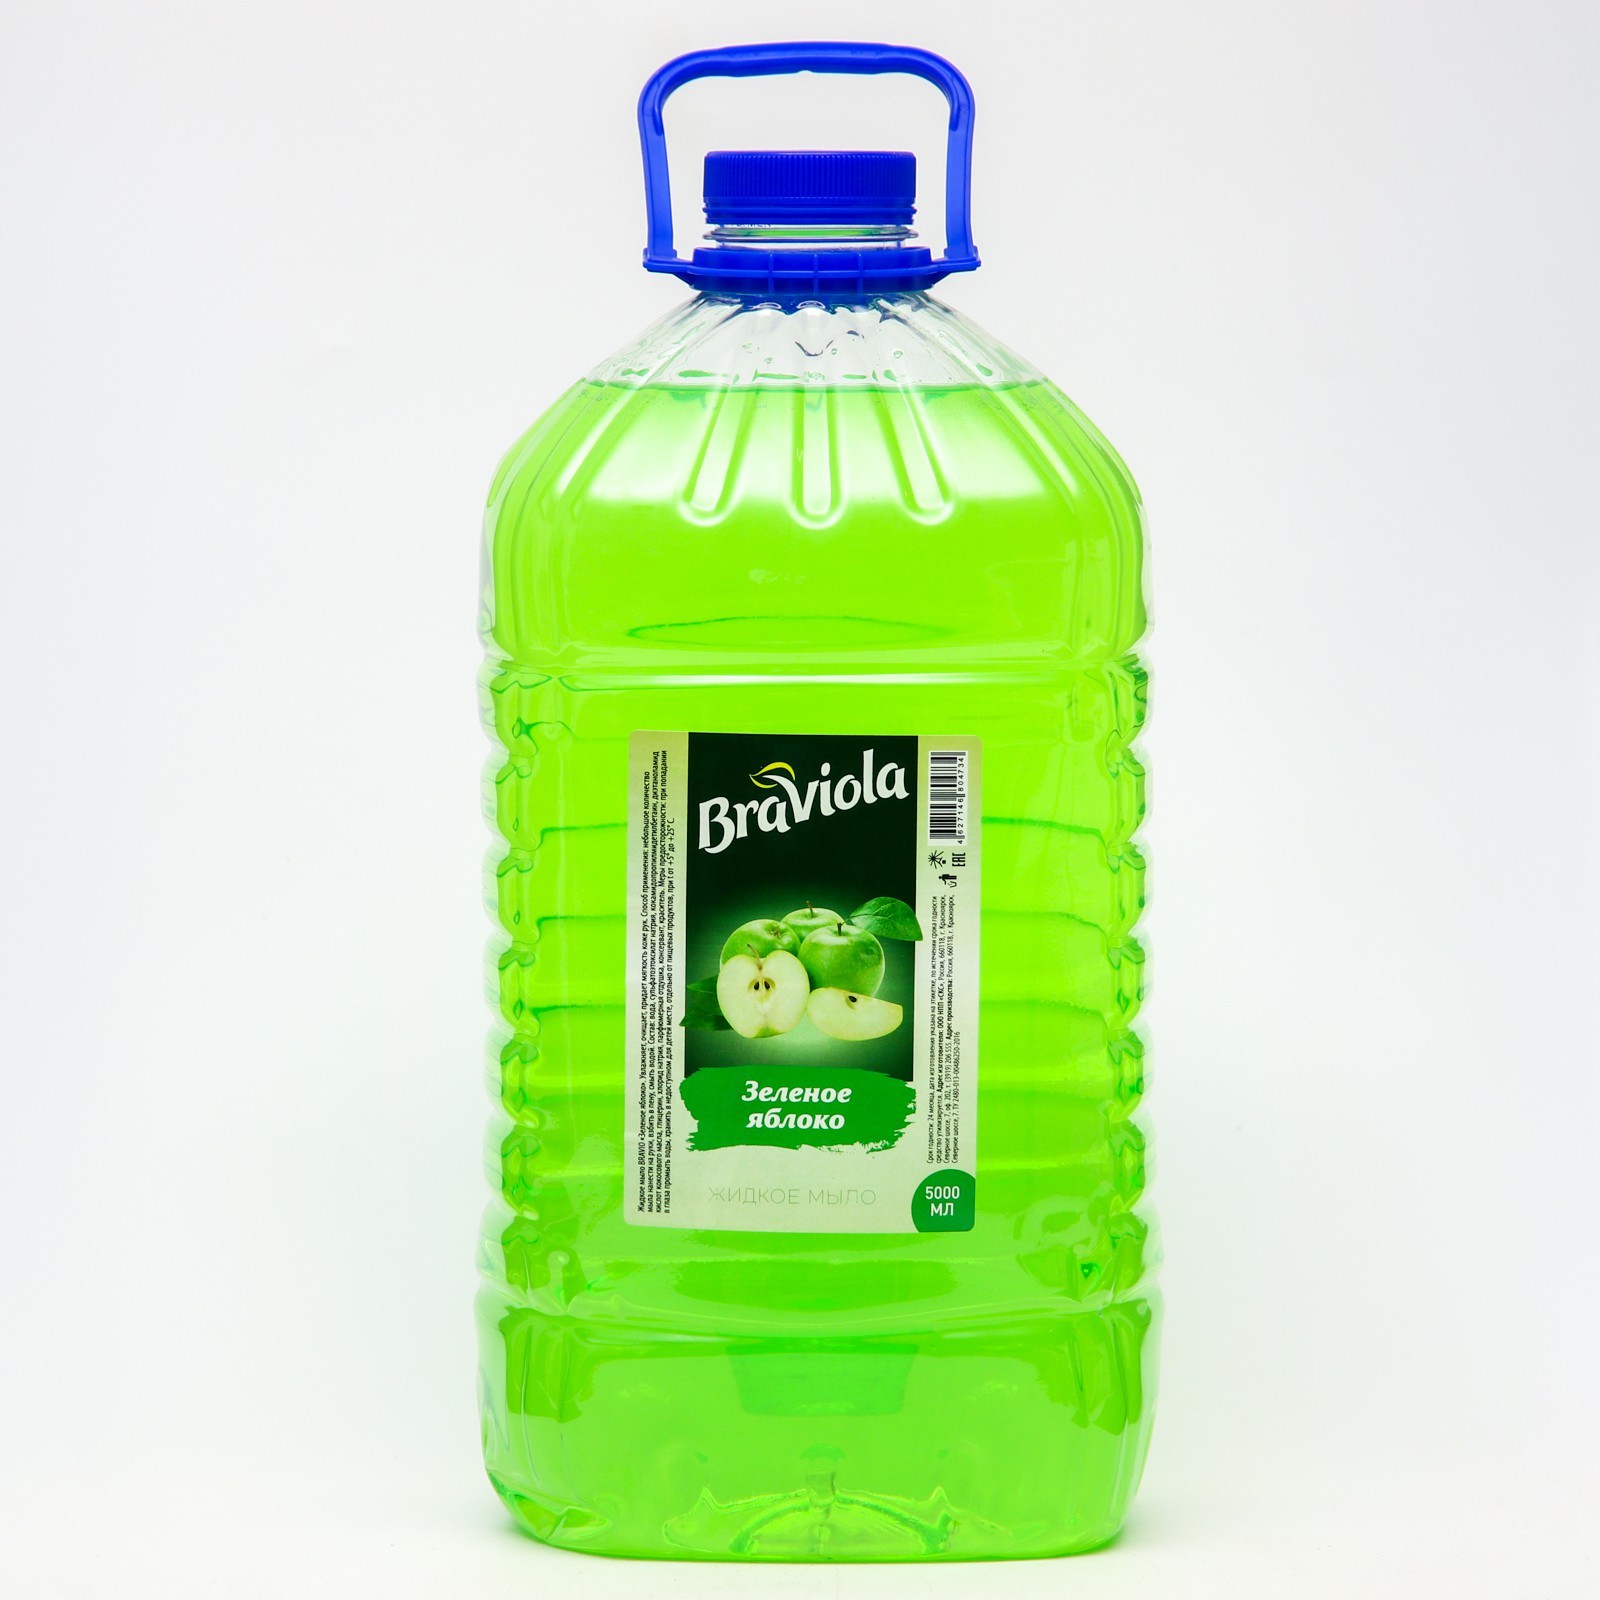 Мыло жидкое Braviola Зеленое яблоко 5 л 1шт мыло ароматное яблоко 90 г